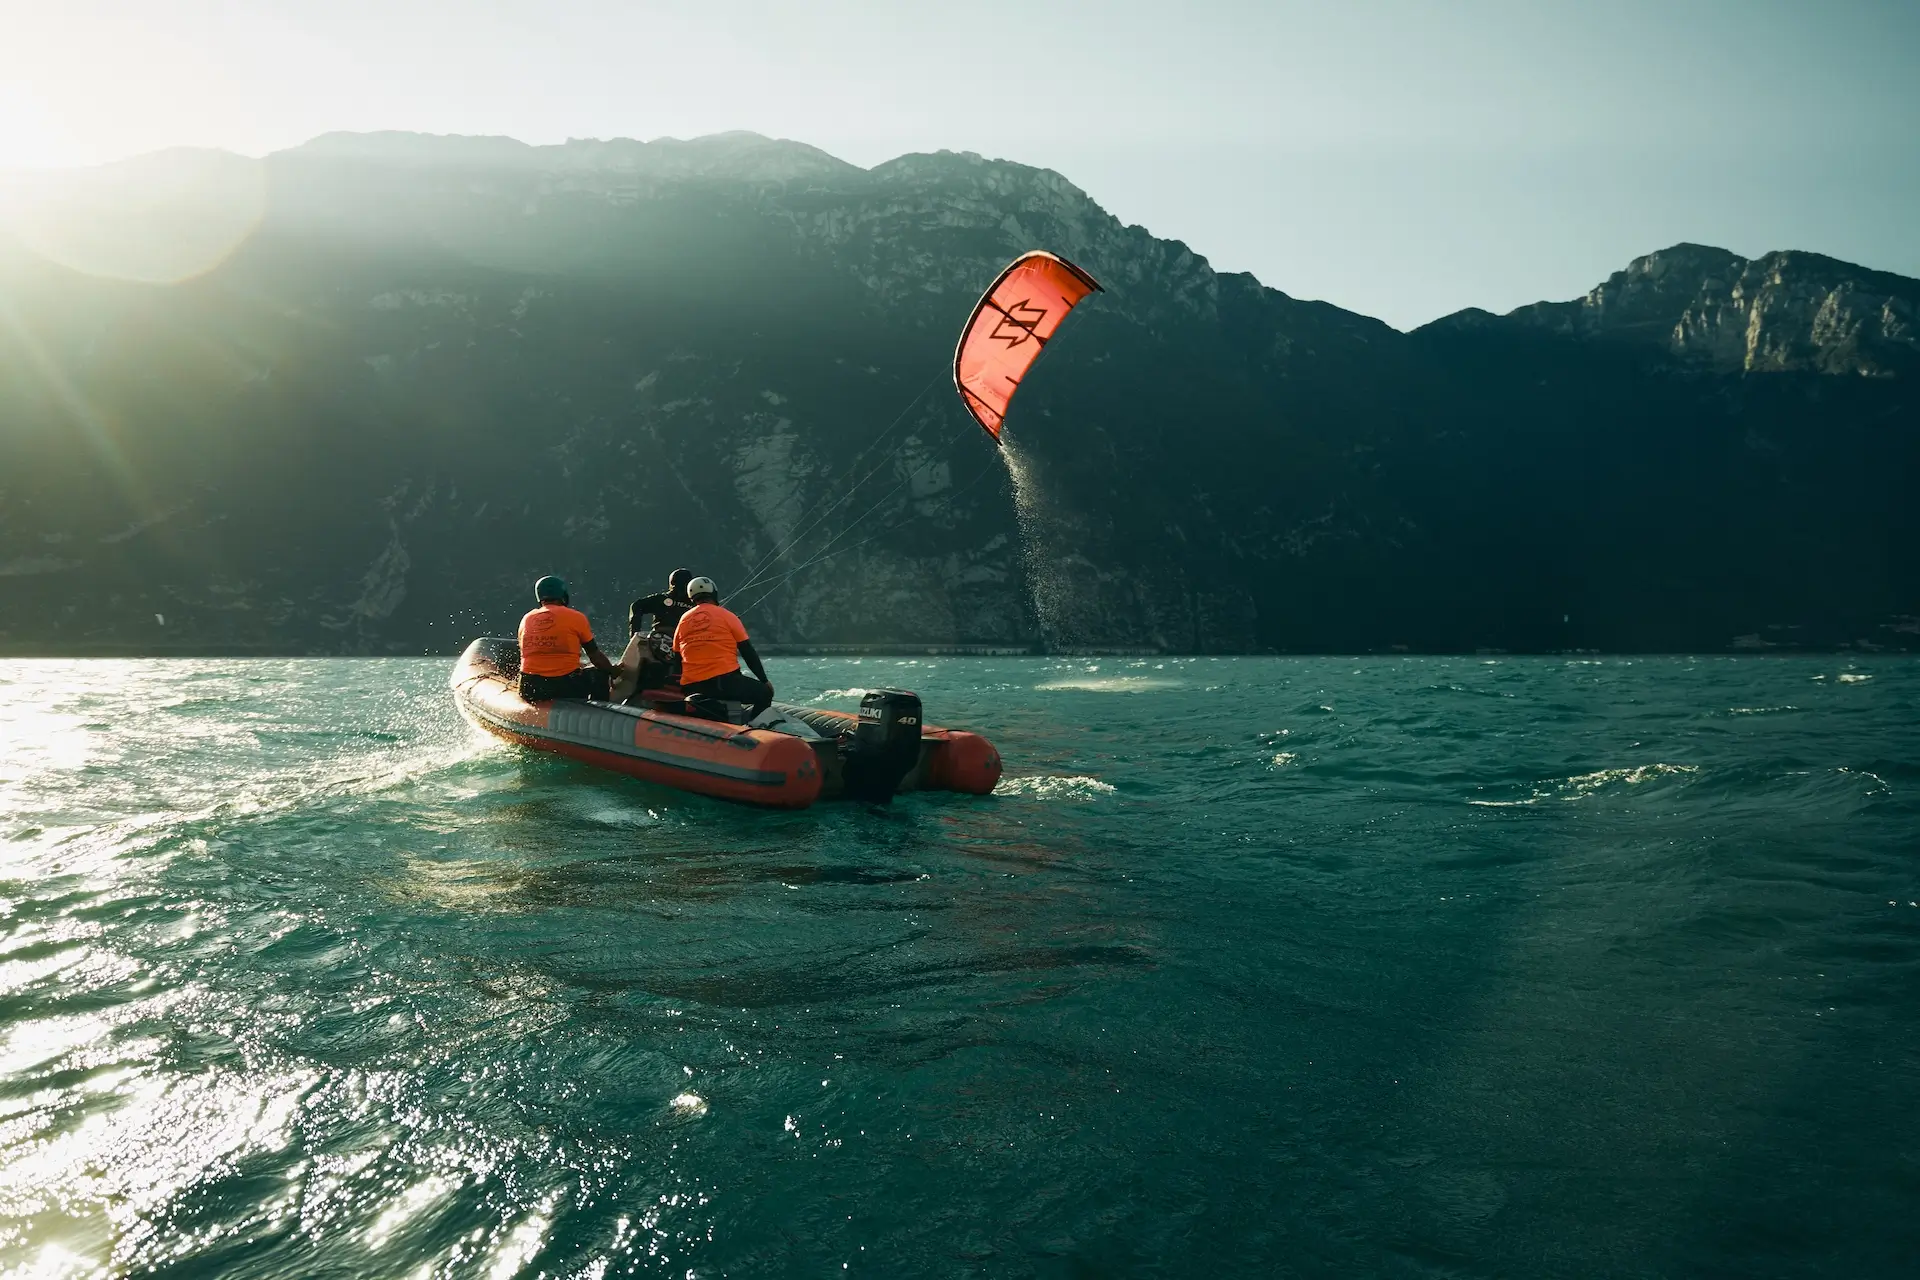 Kitelehrer fliegt roten Kite vom Boot mit zwei Schüler auf dem Boot am Gardasee